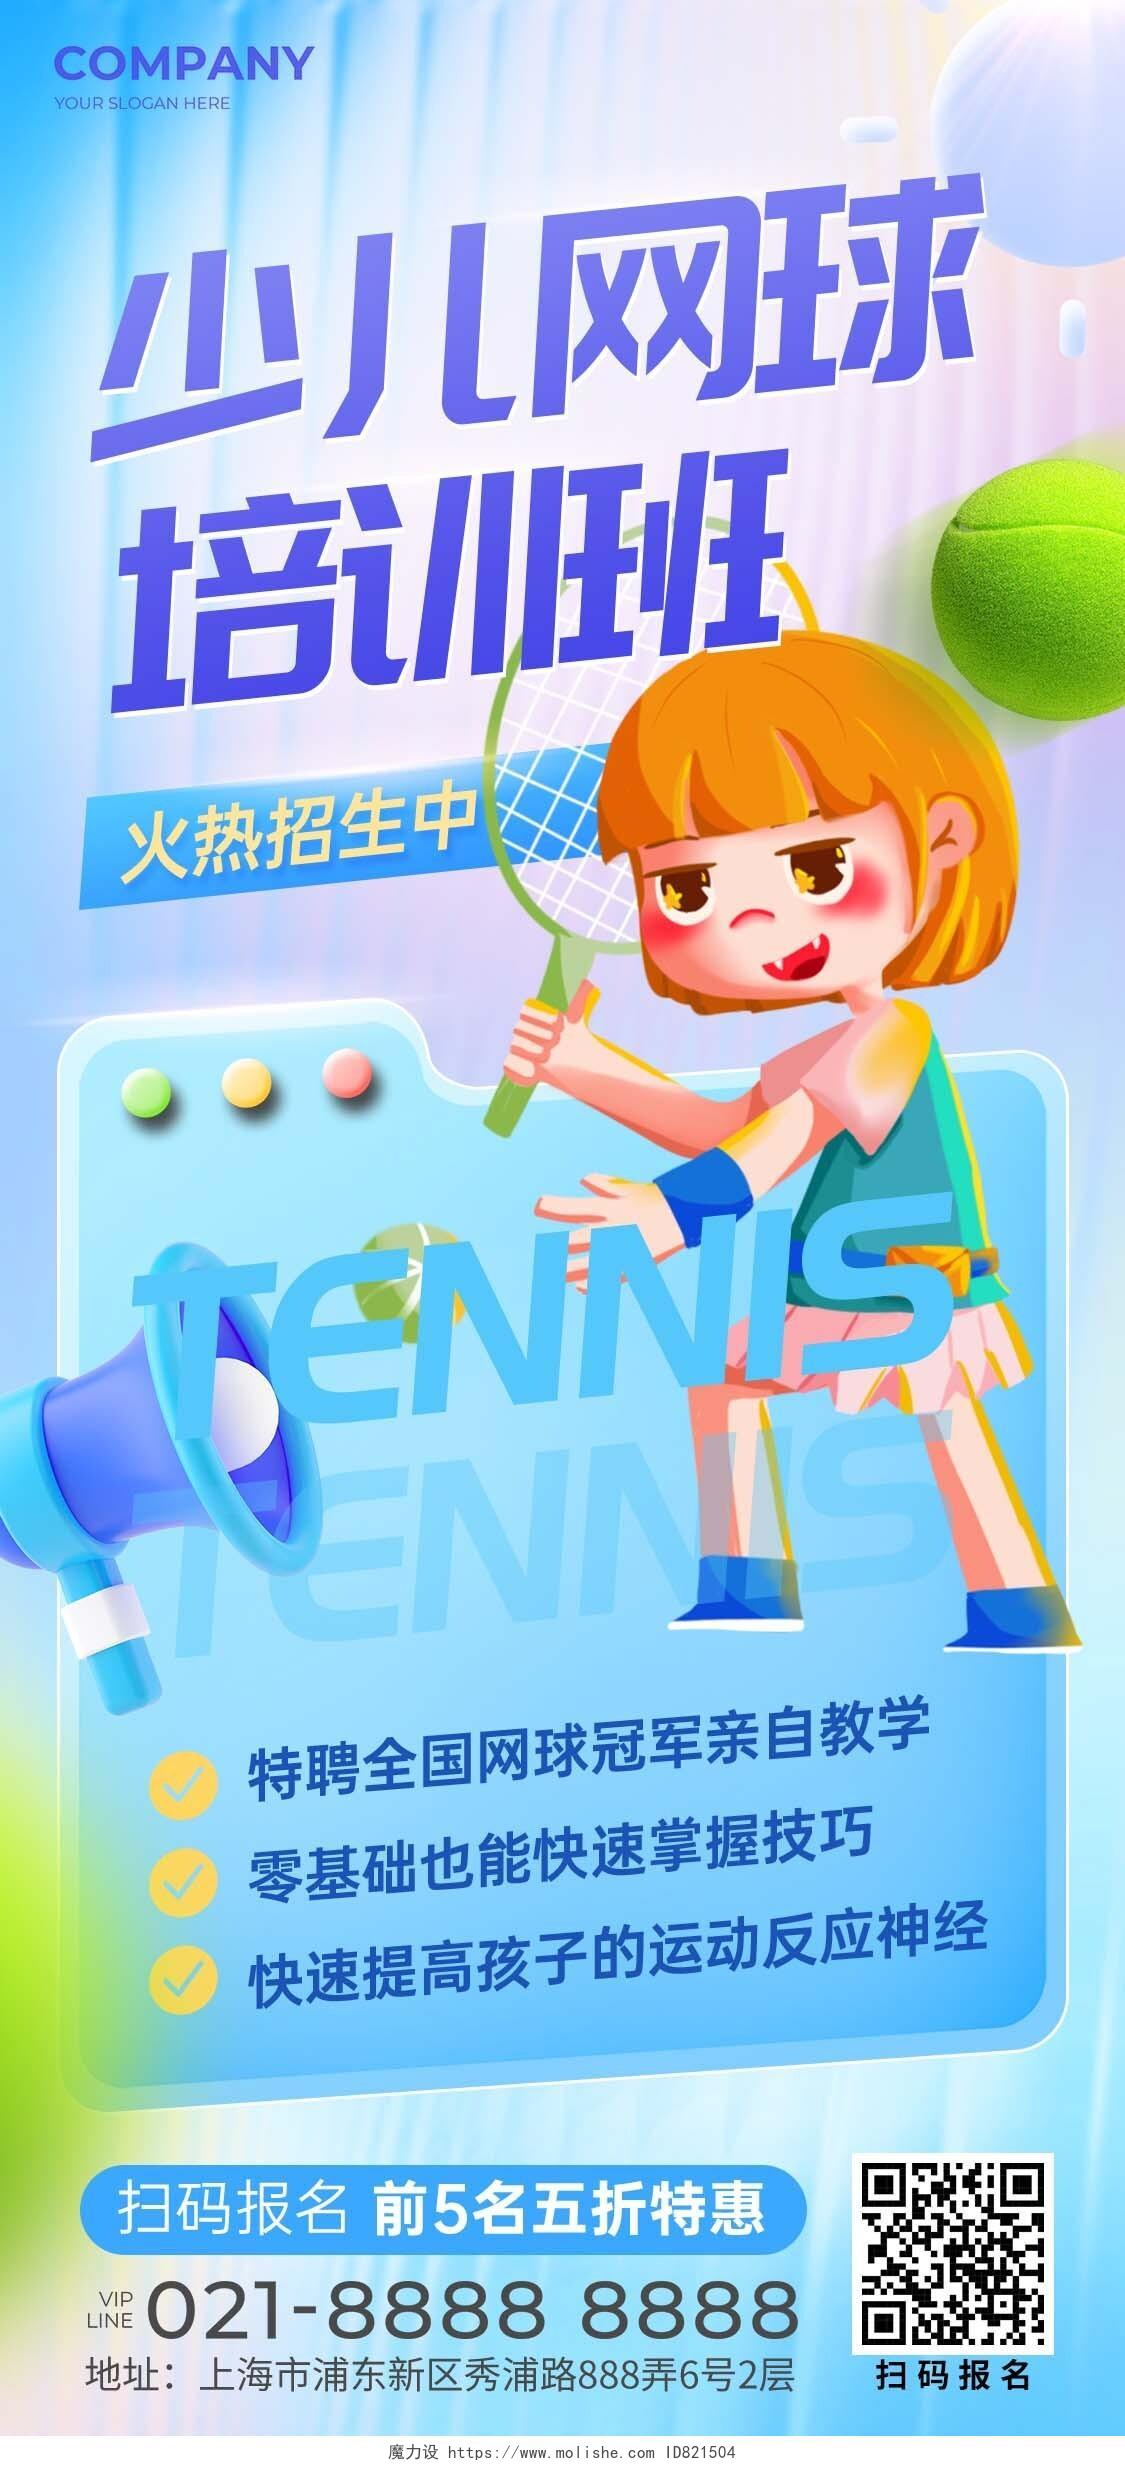 蓝色简约风少儿网球教育培训活动通用宣传海报